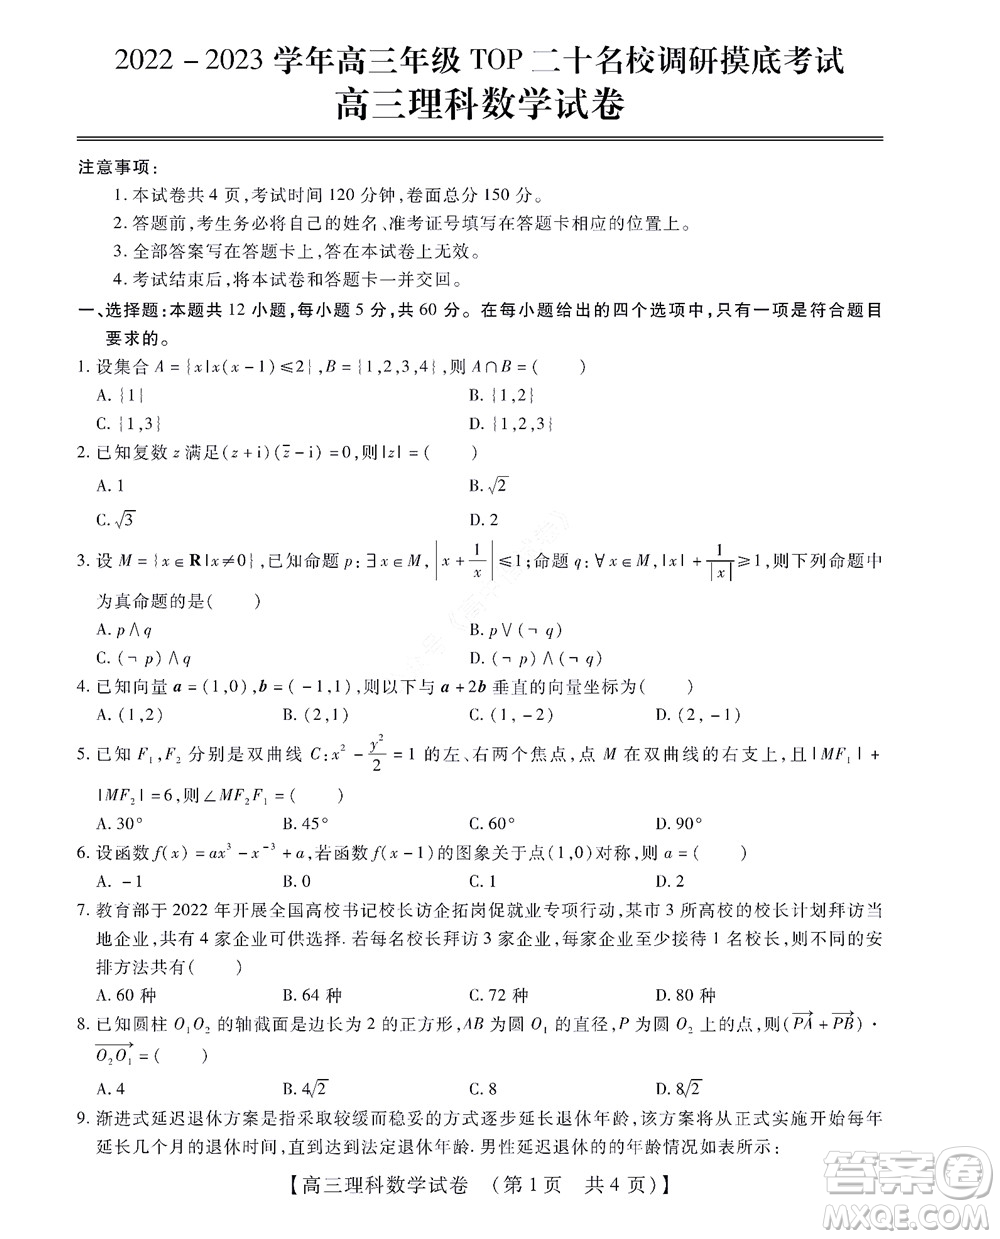 河南省安阳市2022-2023学年高三年级TOP二十名校调研摸底考试高三理科数学试题及答案